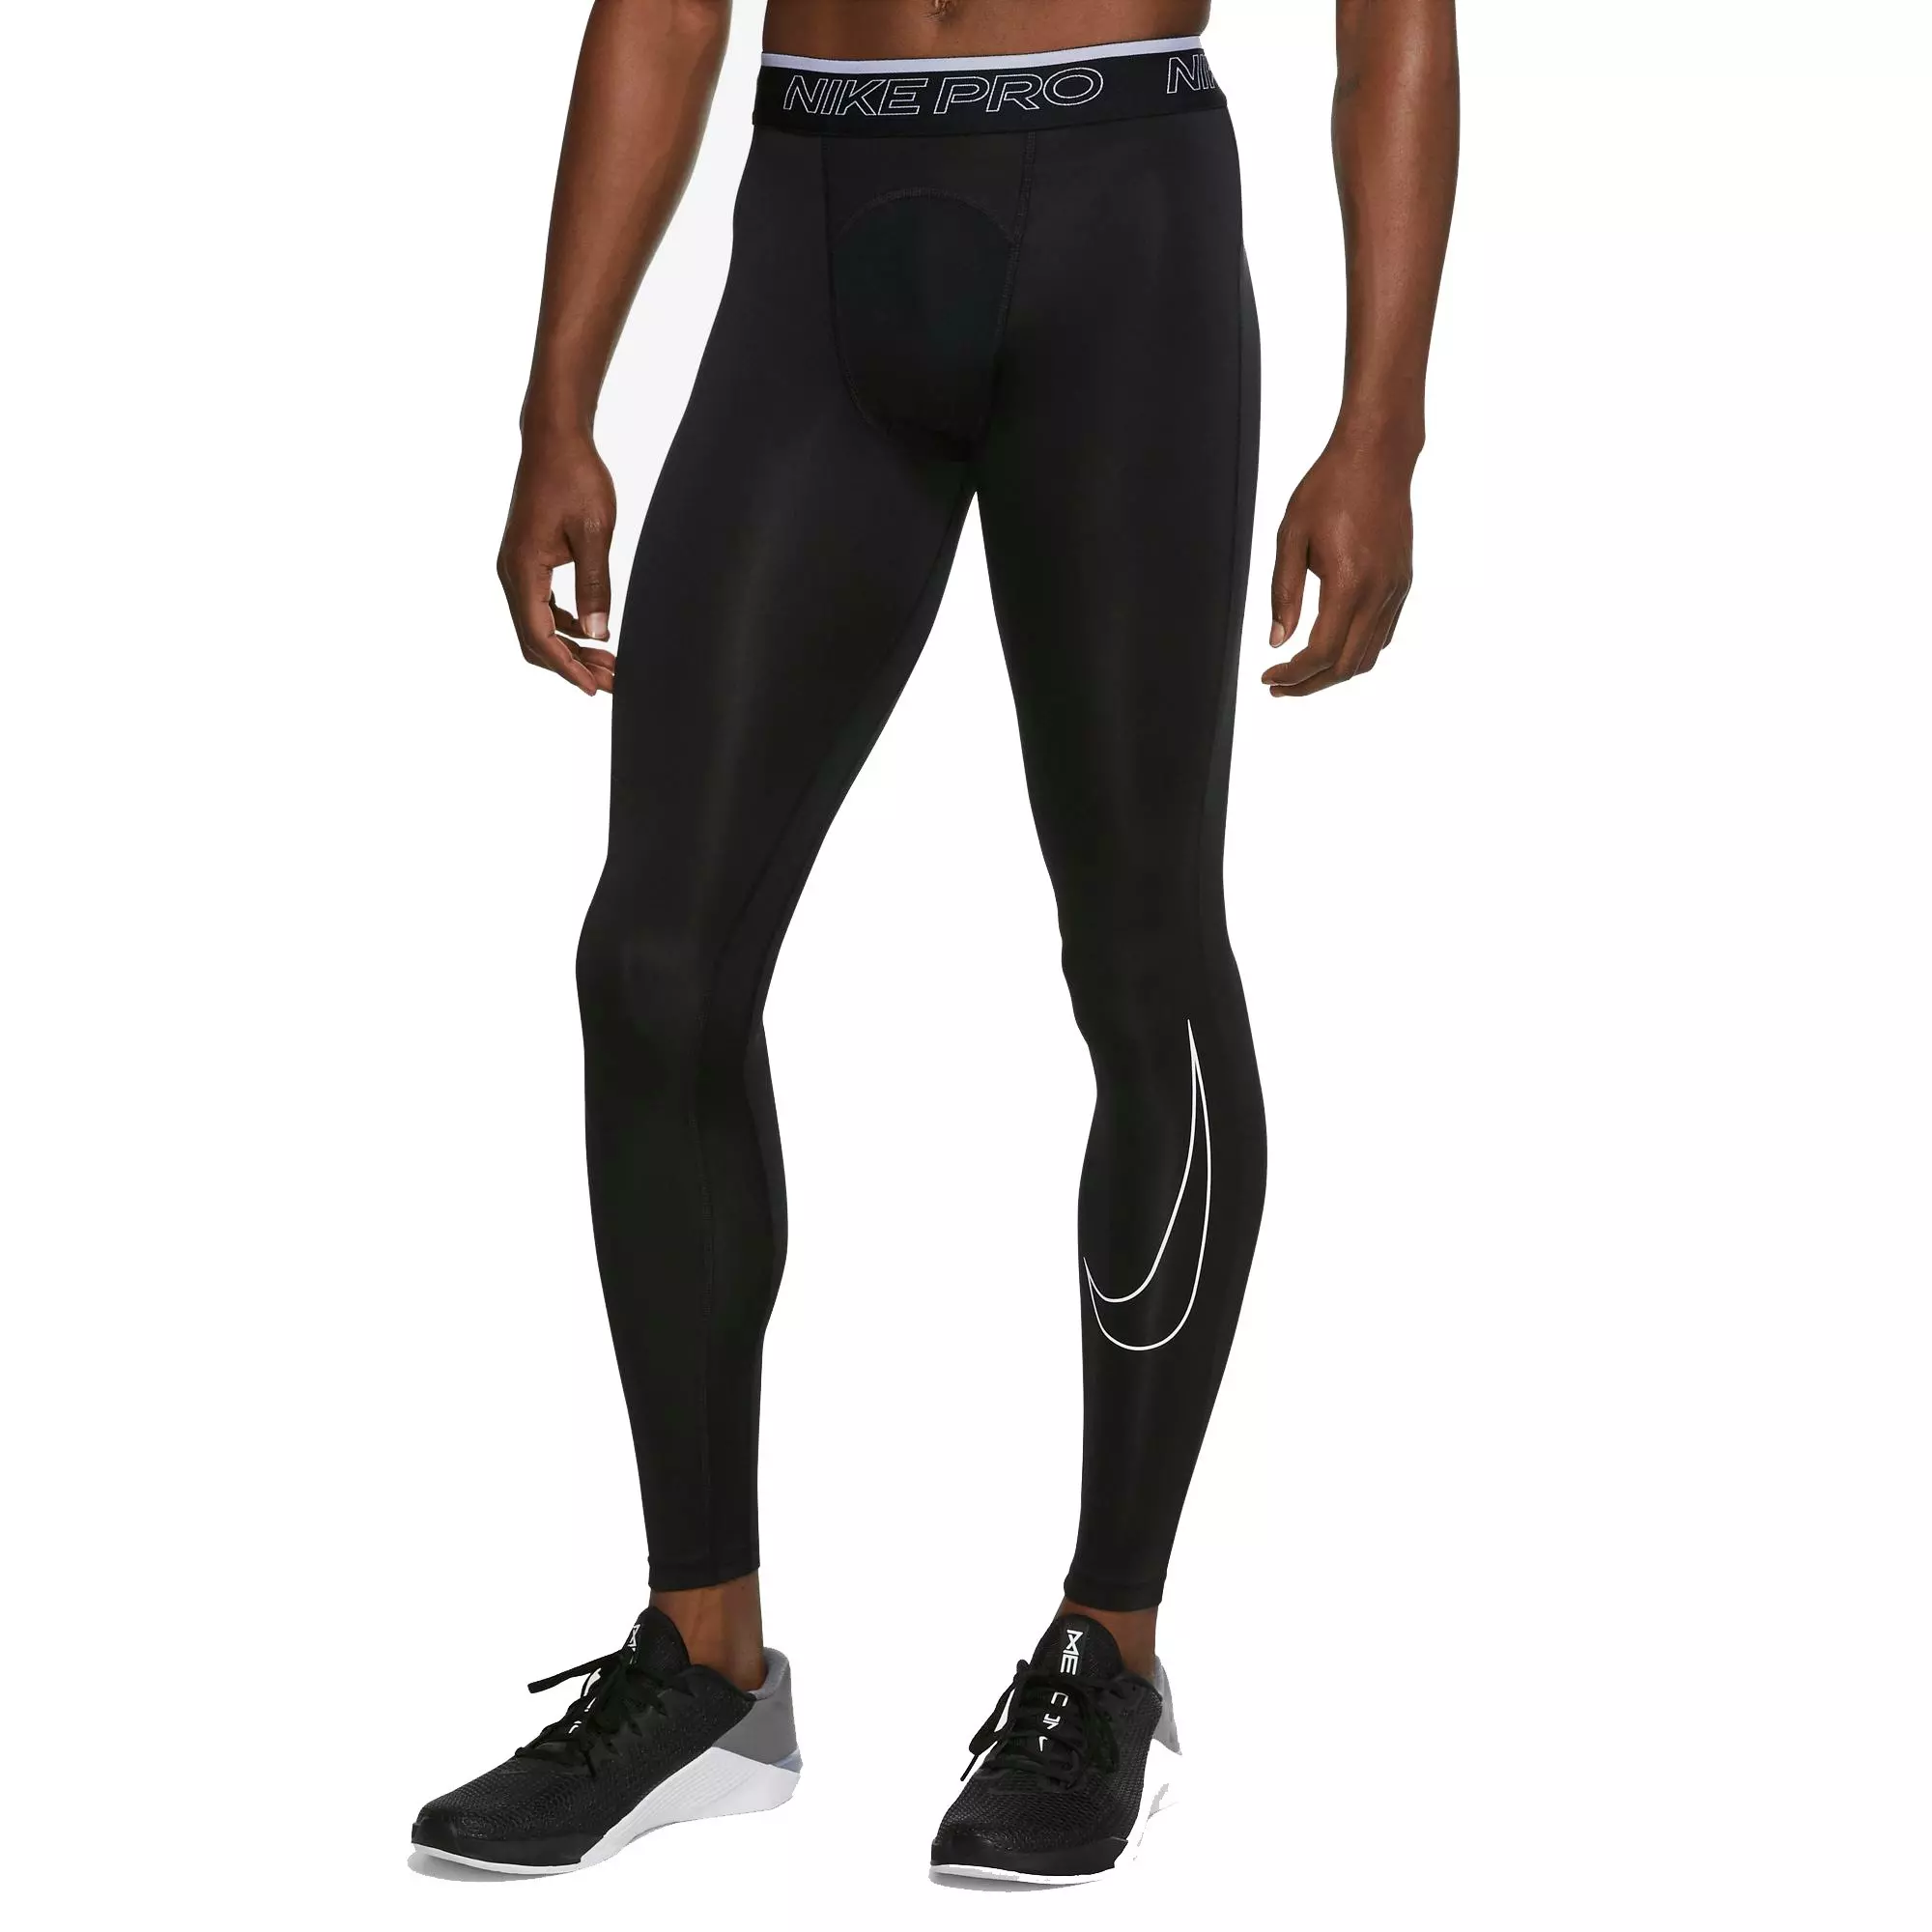 Nike Pro Dri-FIT Black Compression Capri Pants Leggings Girls Size